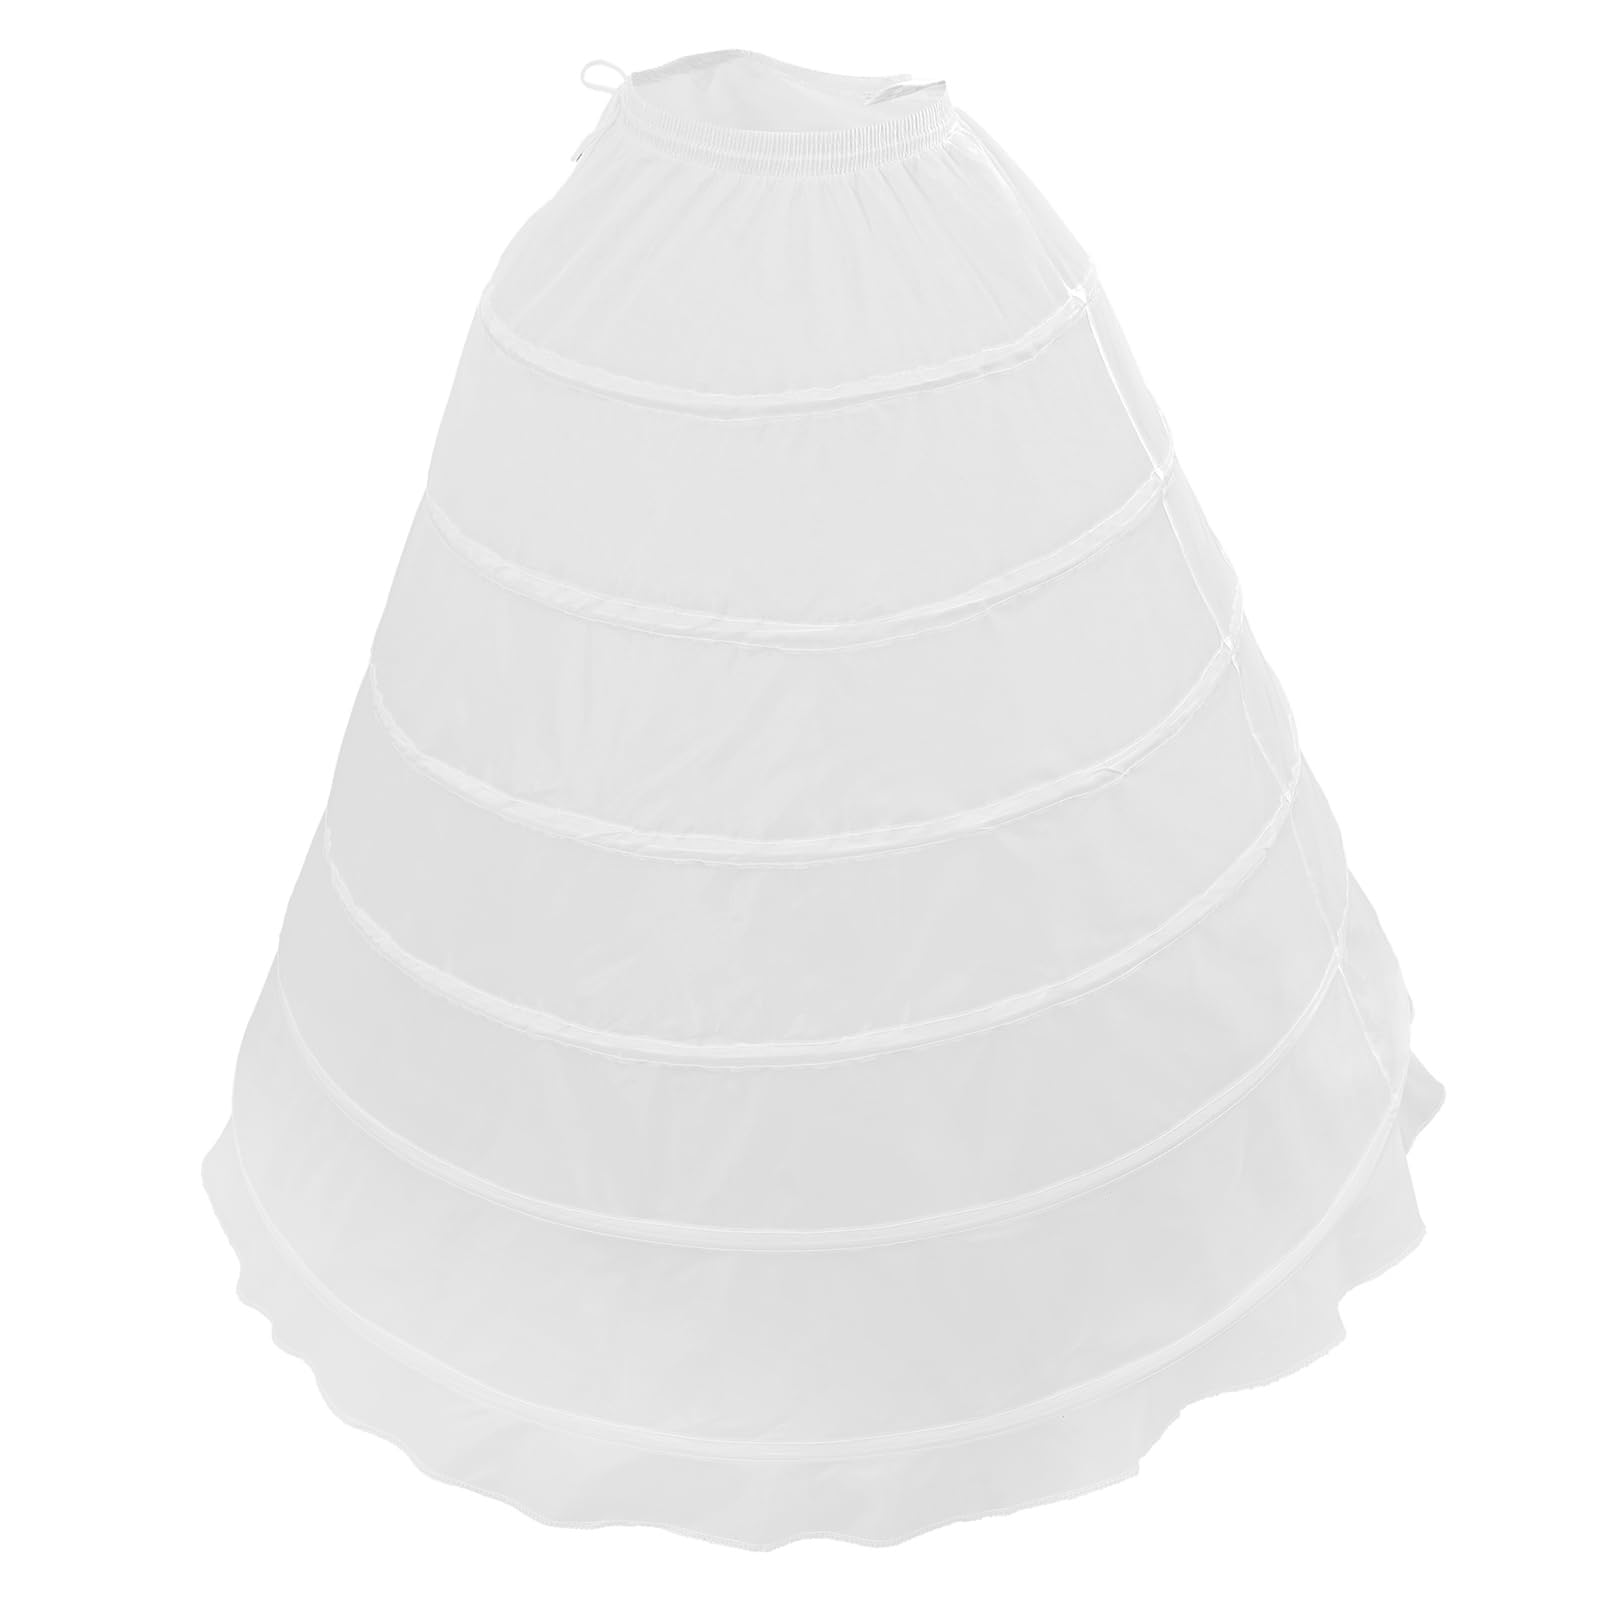 Holibanna Weihnachten Brautkleid Petticoat für Weihnachten Ballkleid Slip Unterrock 6 Hoop Reifrock, 110CM